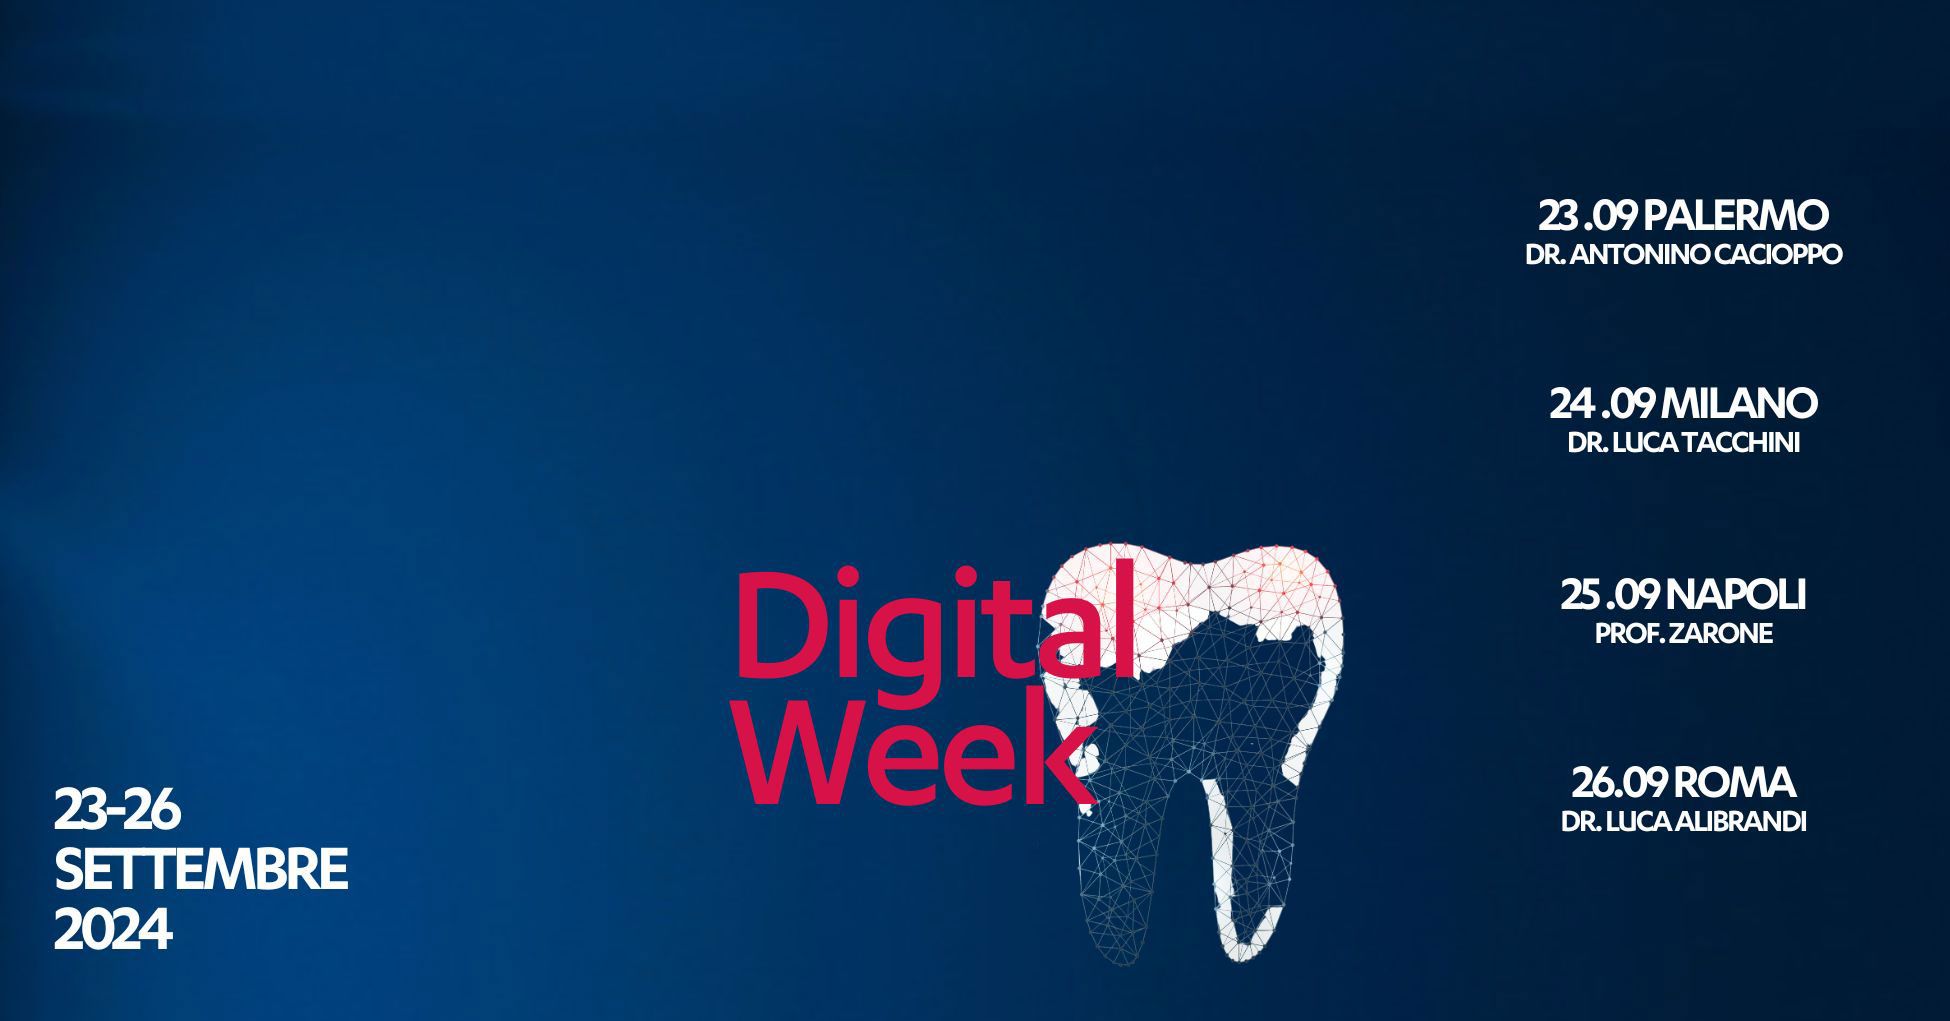 digital week